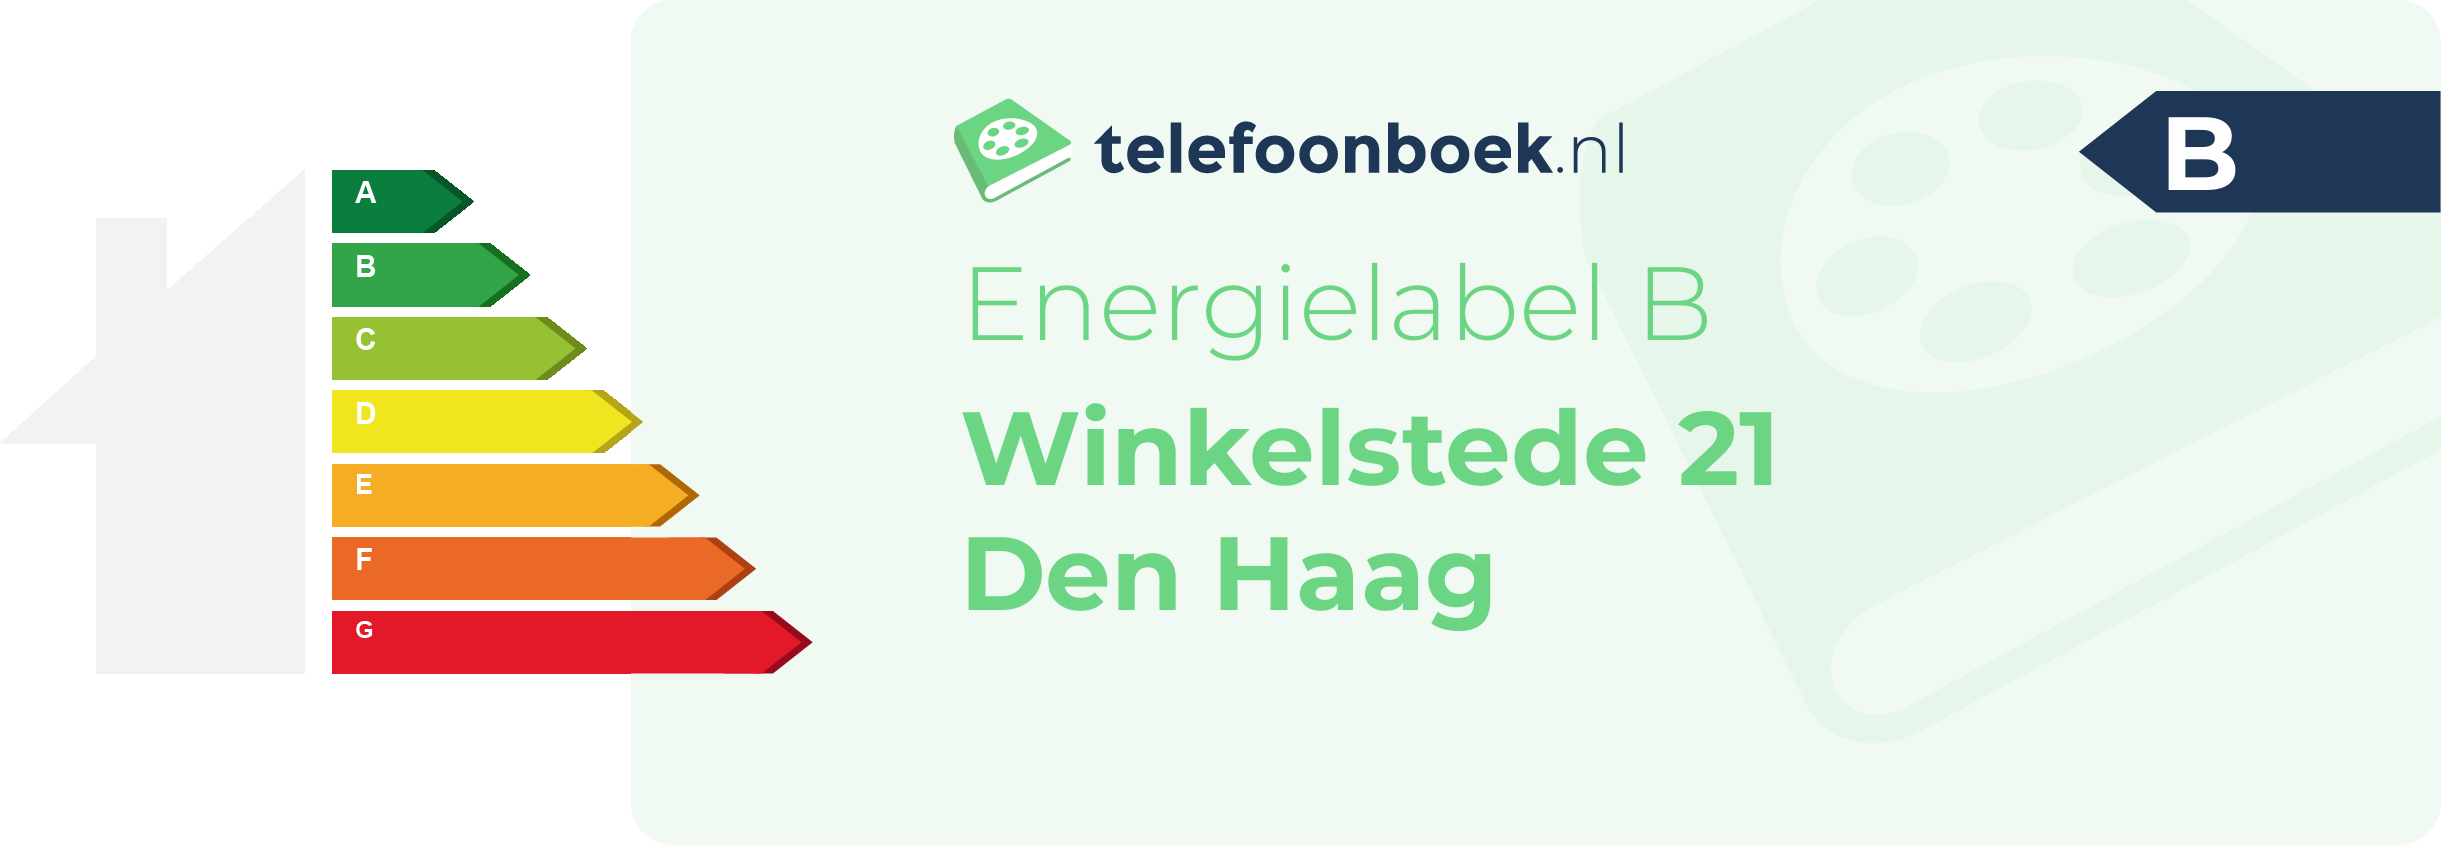 Energielabel Winkelstede 21 Den Haag